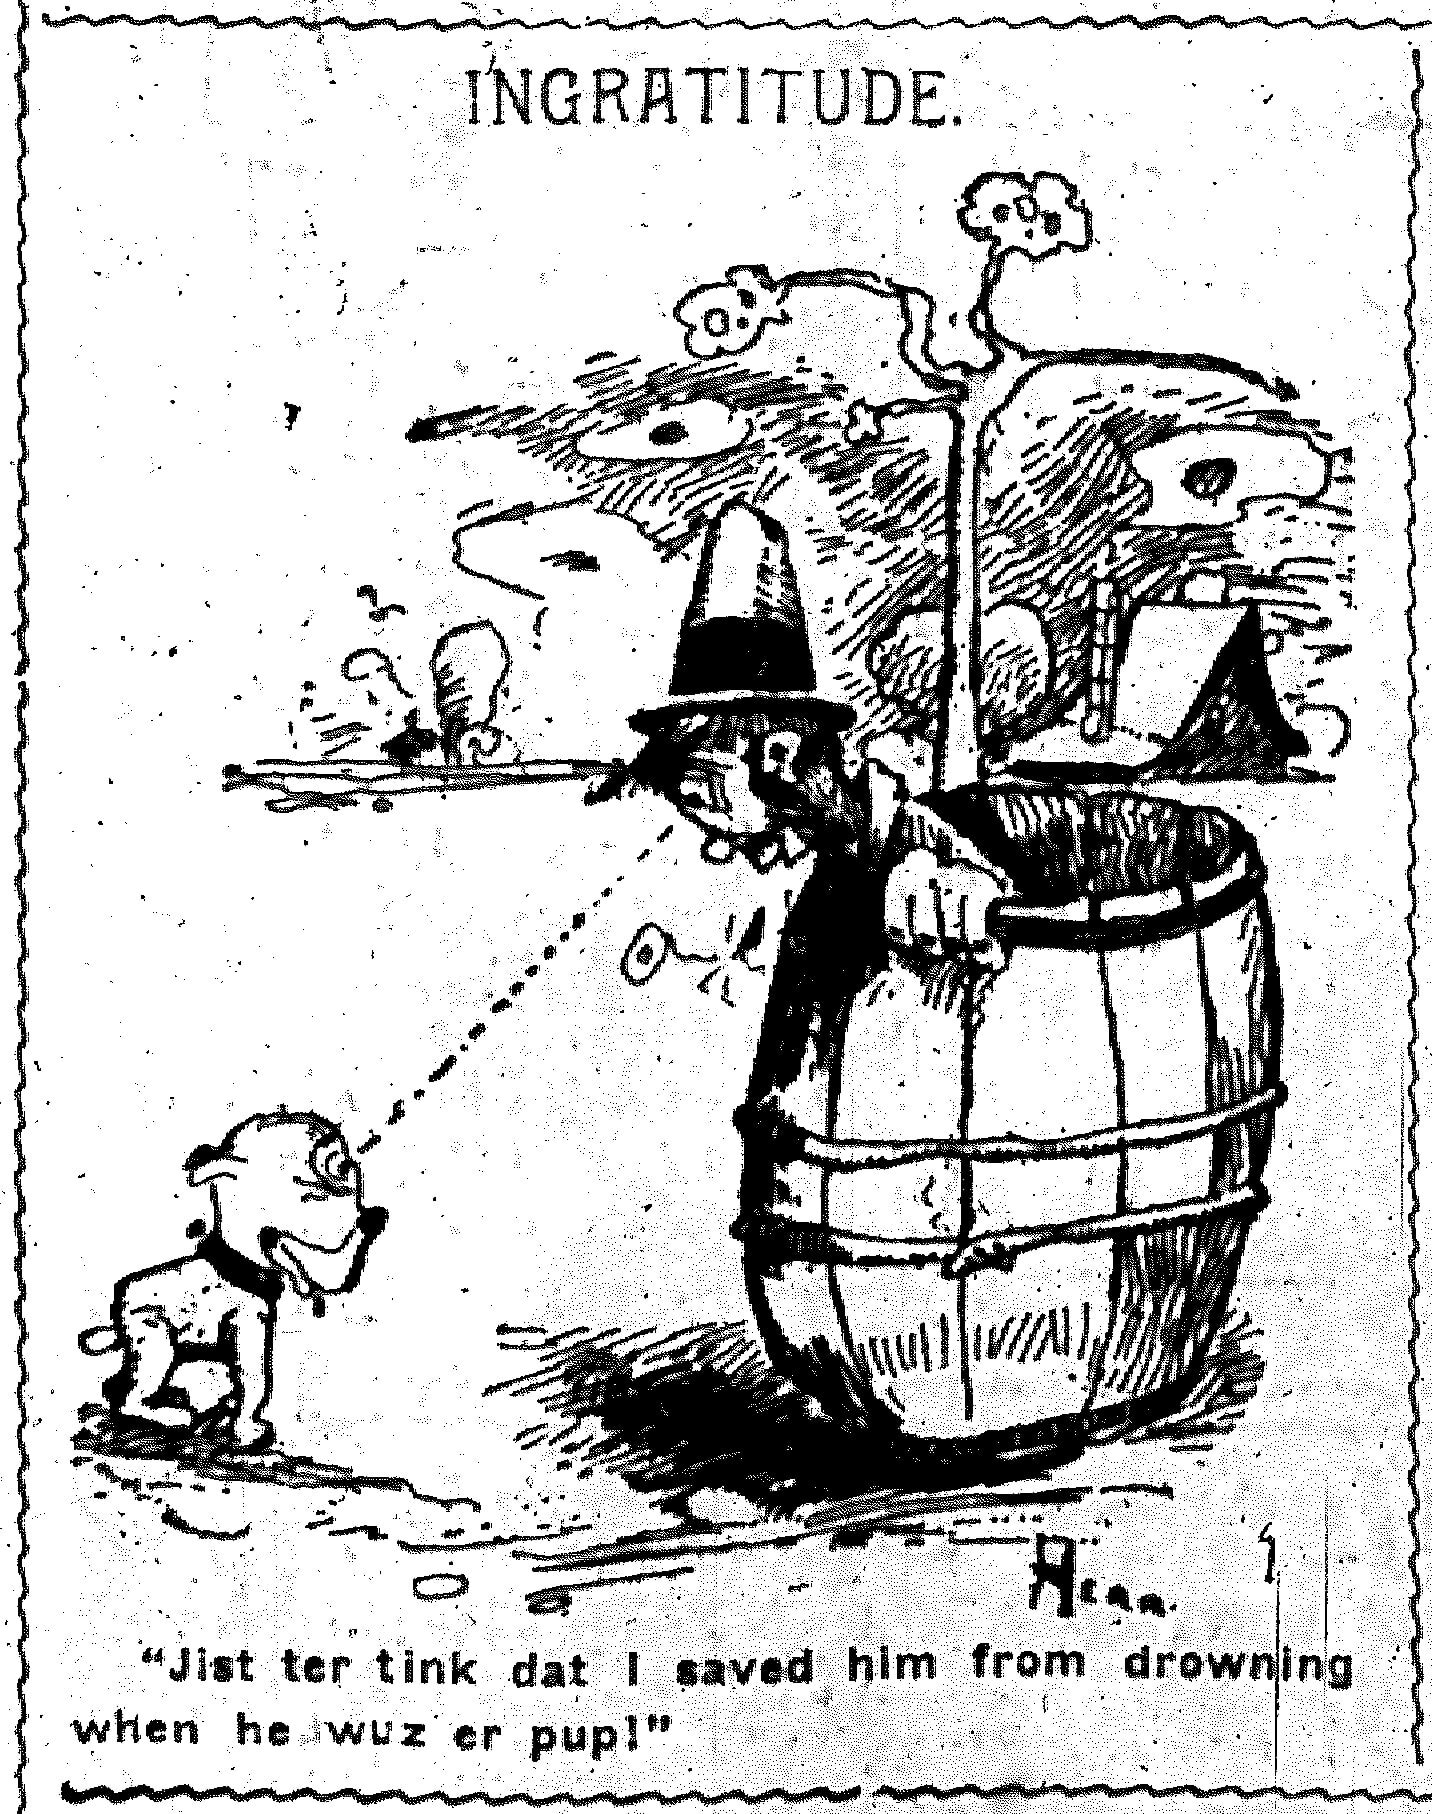 04-nyej-03-26-1901-herriman-cartoon.jpg